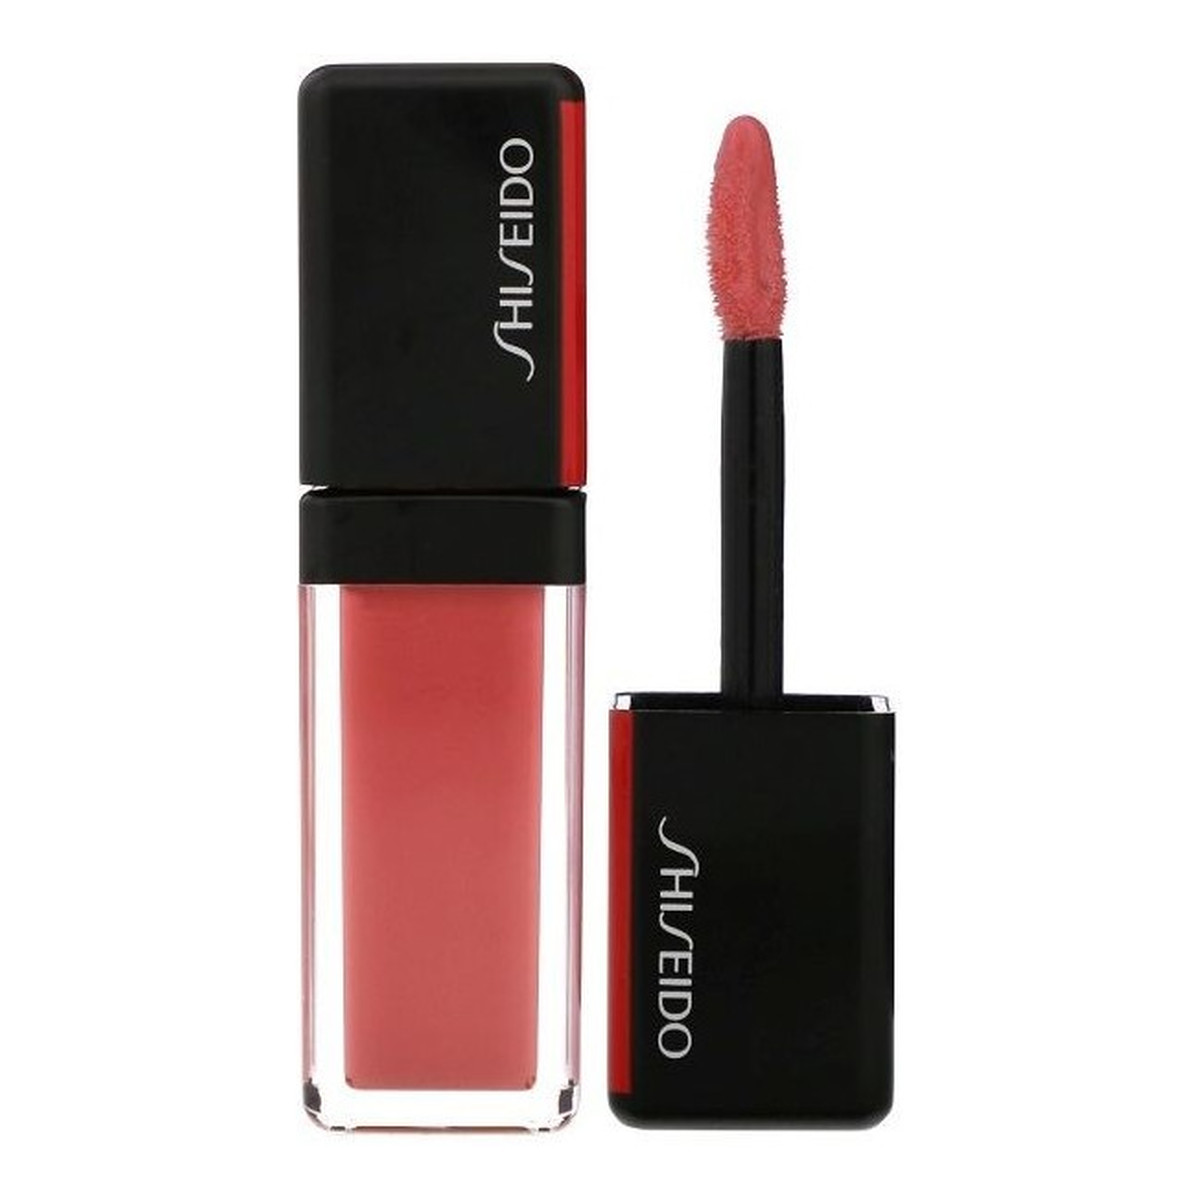 Shiseido LacquerInk LipShine pomadka w płynie 6ml